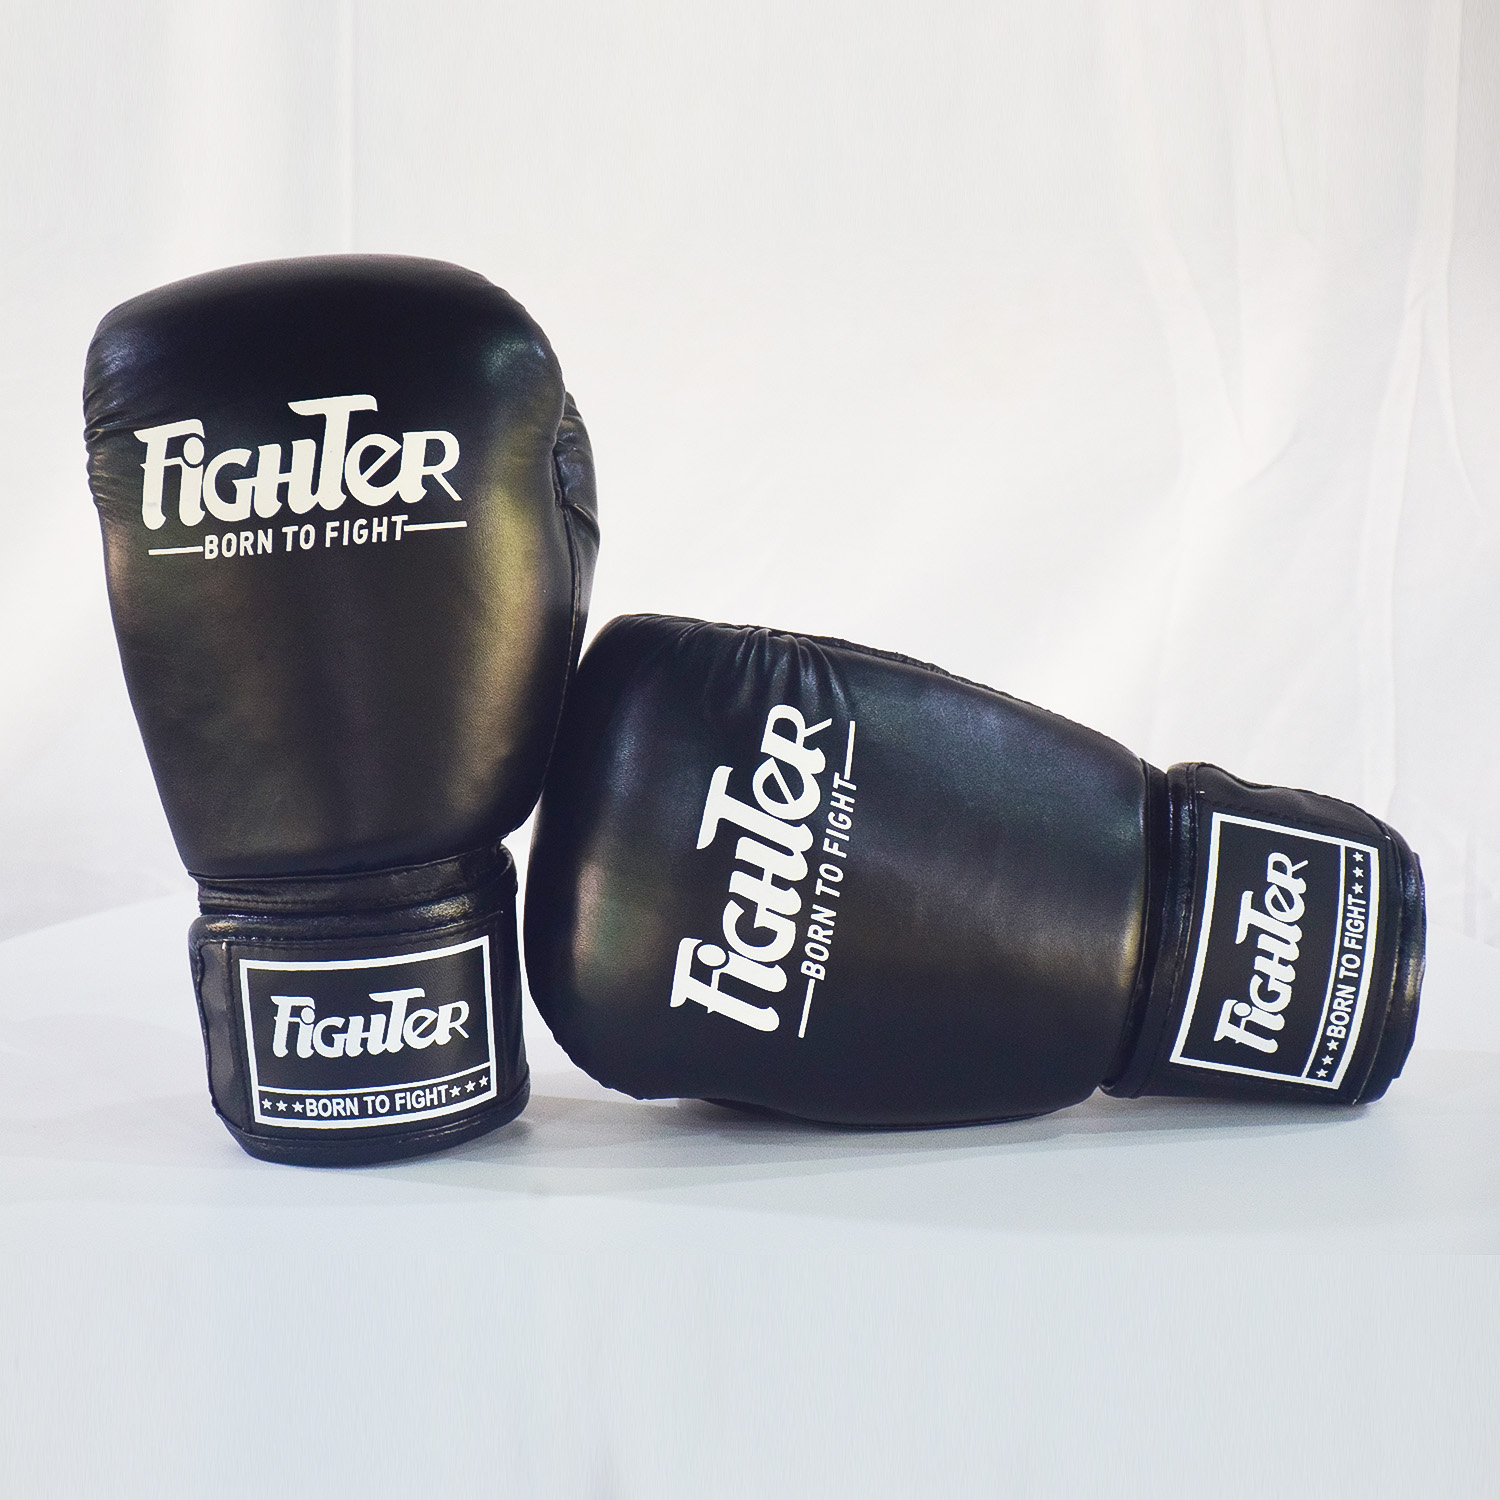 Găng Boxing Fighter - Màu Đen | Dùng cho Boxing, Muay, KickBoxing, Võ Cổ Truyền